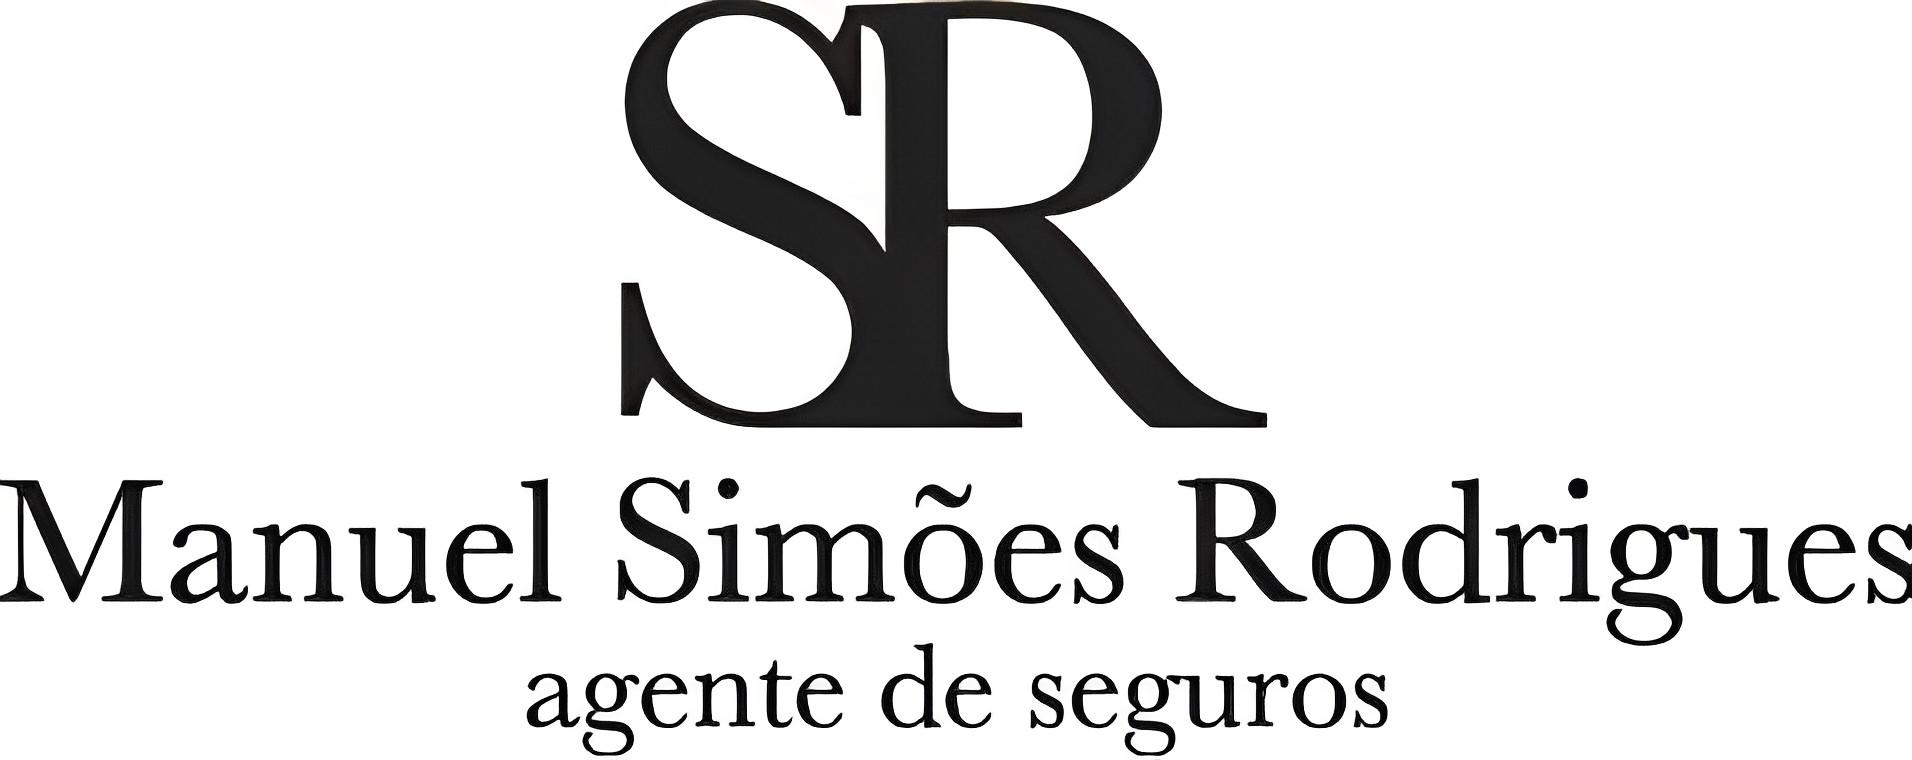 Images Manuel Simões Rodrigues - Agente de seguros multimarcas